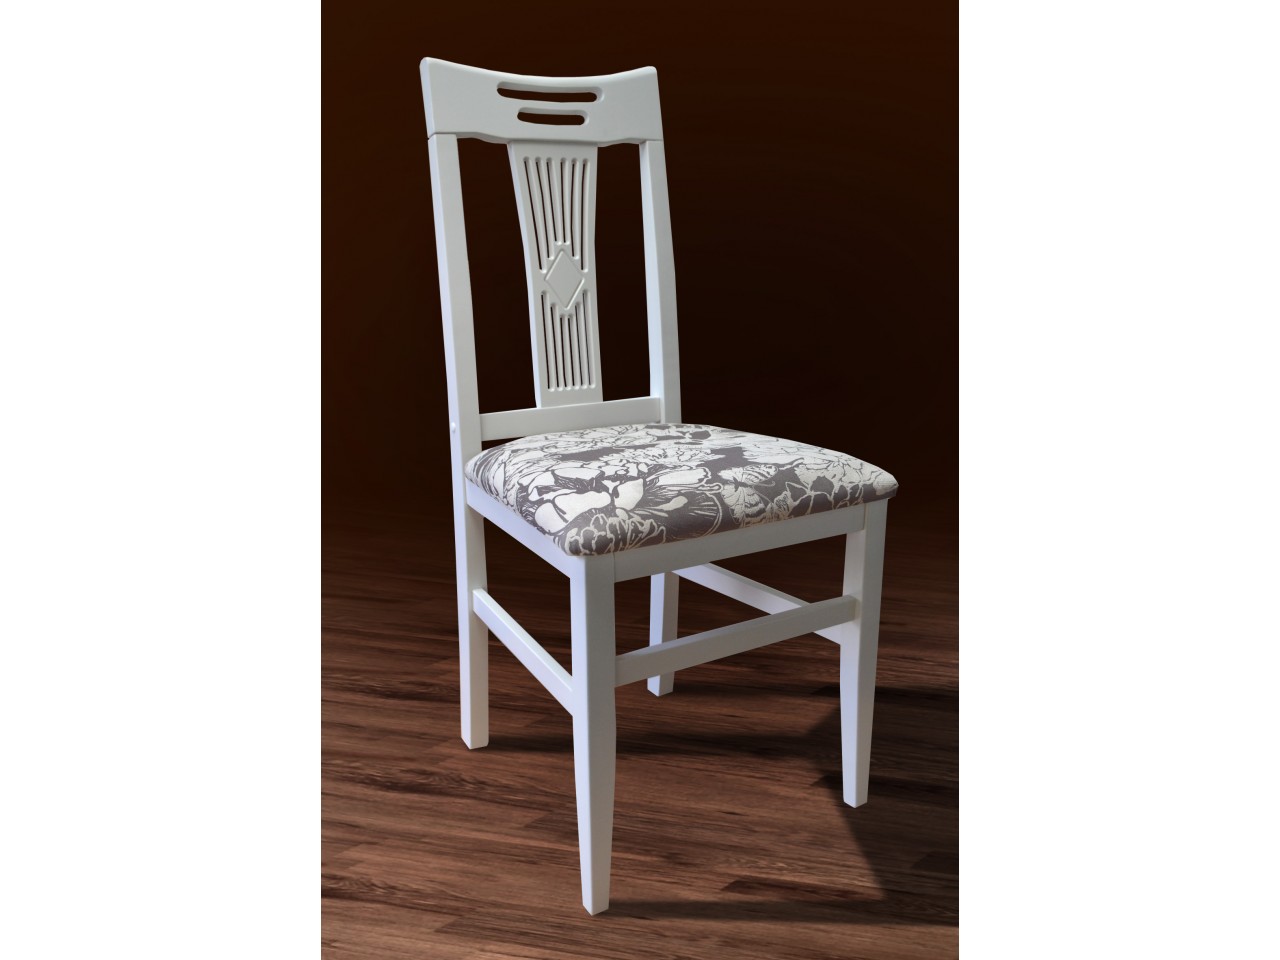 Деревянный белый стул из икеи